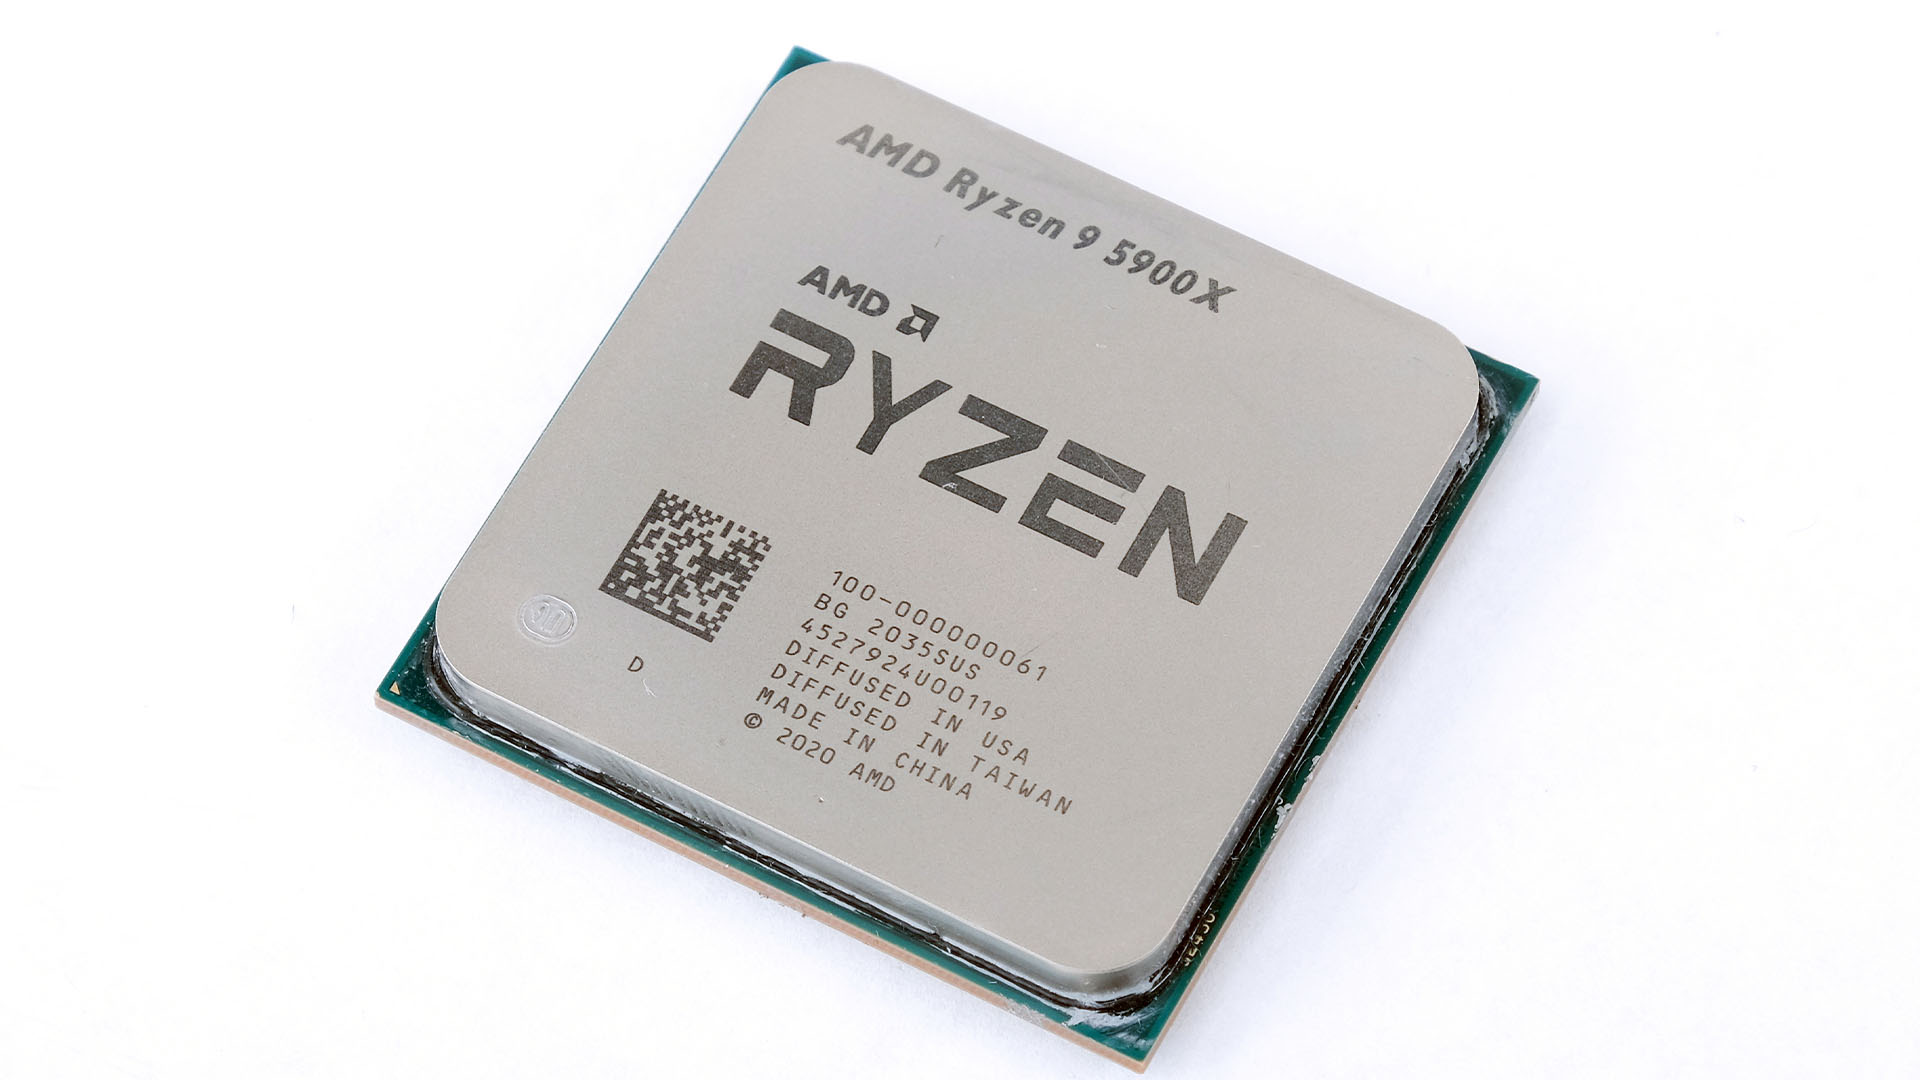 【匿名配送】Ryzen 9 5900X 【国内正規品】AMD CPU 5900X